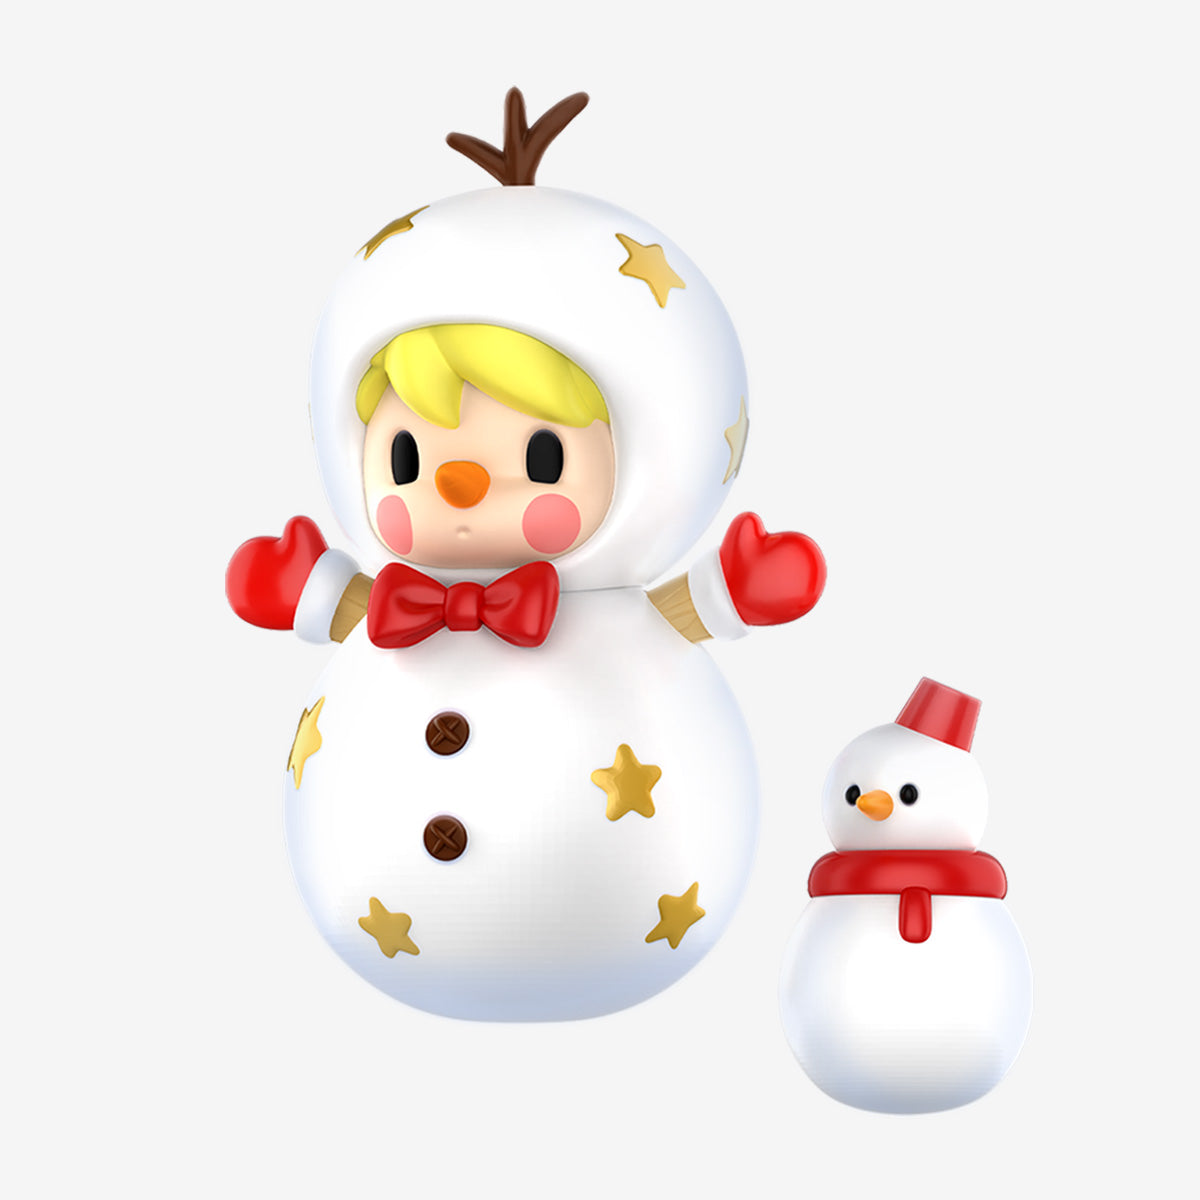 【New】Sweet Bean Snowman Figure